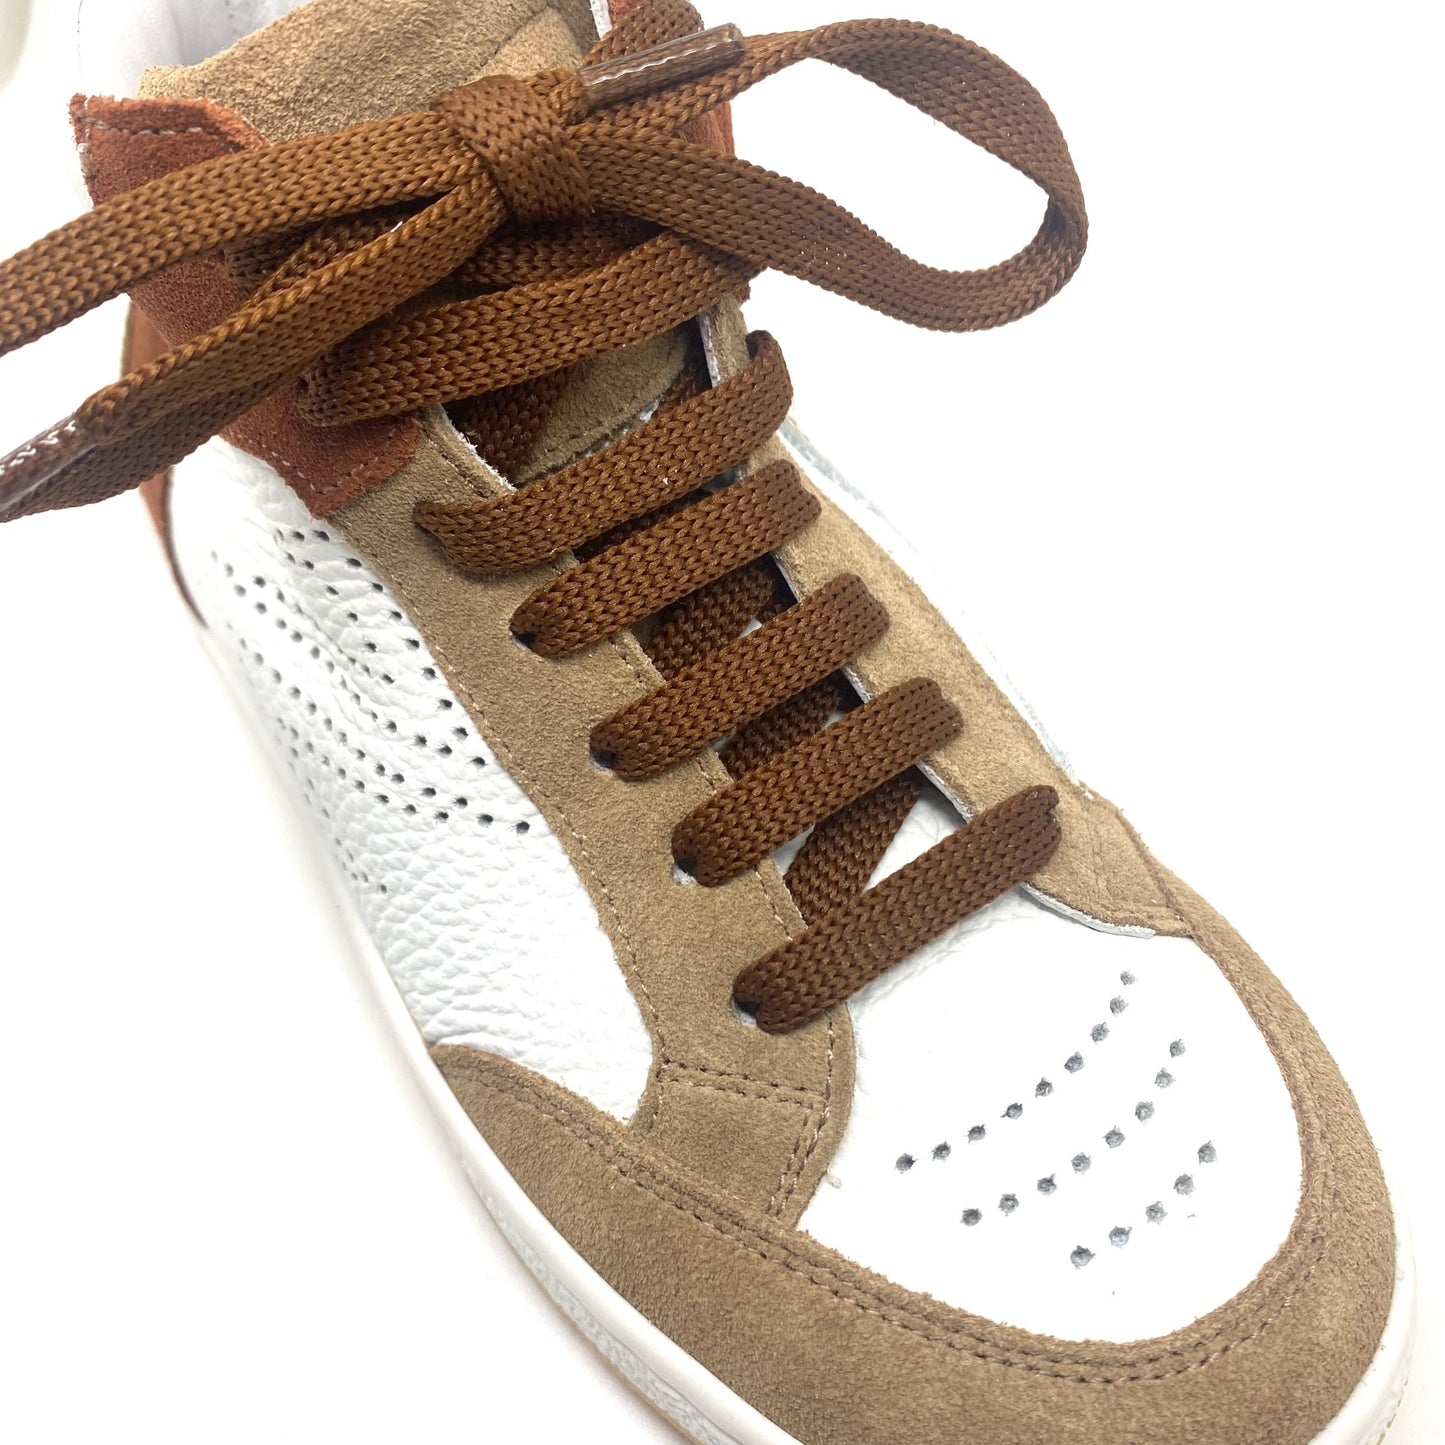 Zecchino D'oro sneaker bruin wit.